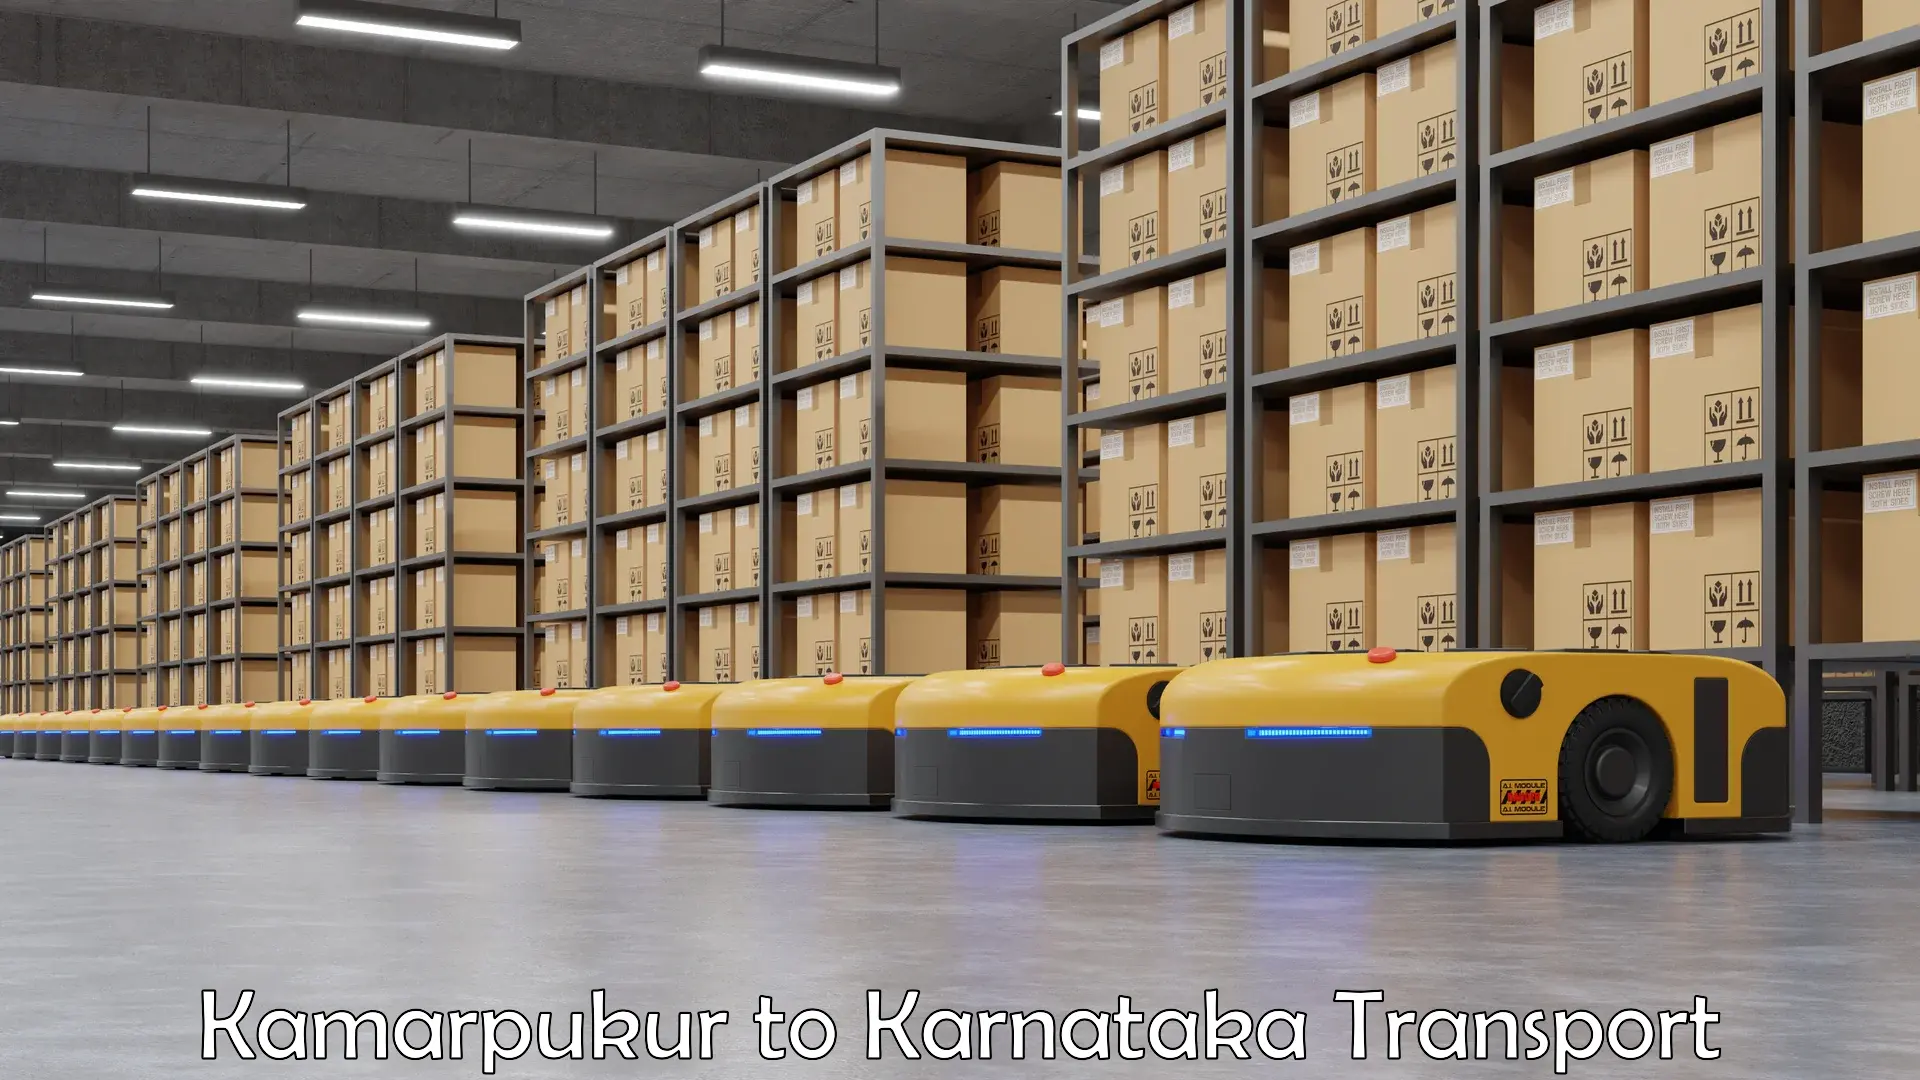 Truck transport companies in India Kamarpukur to yedrami